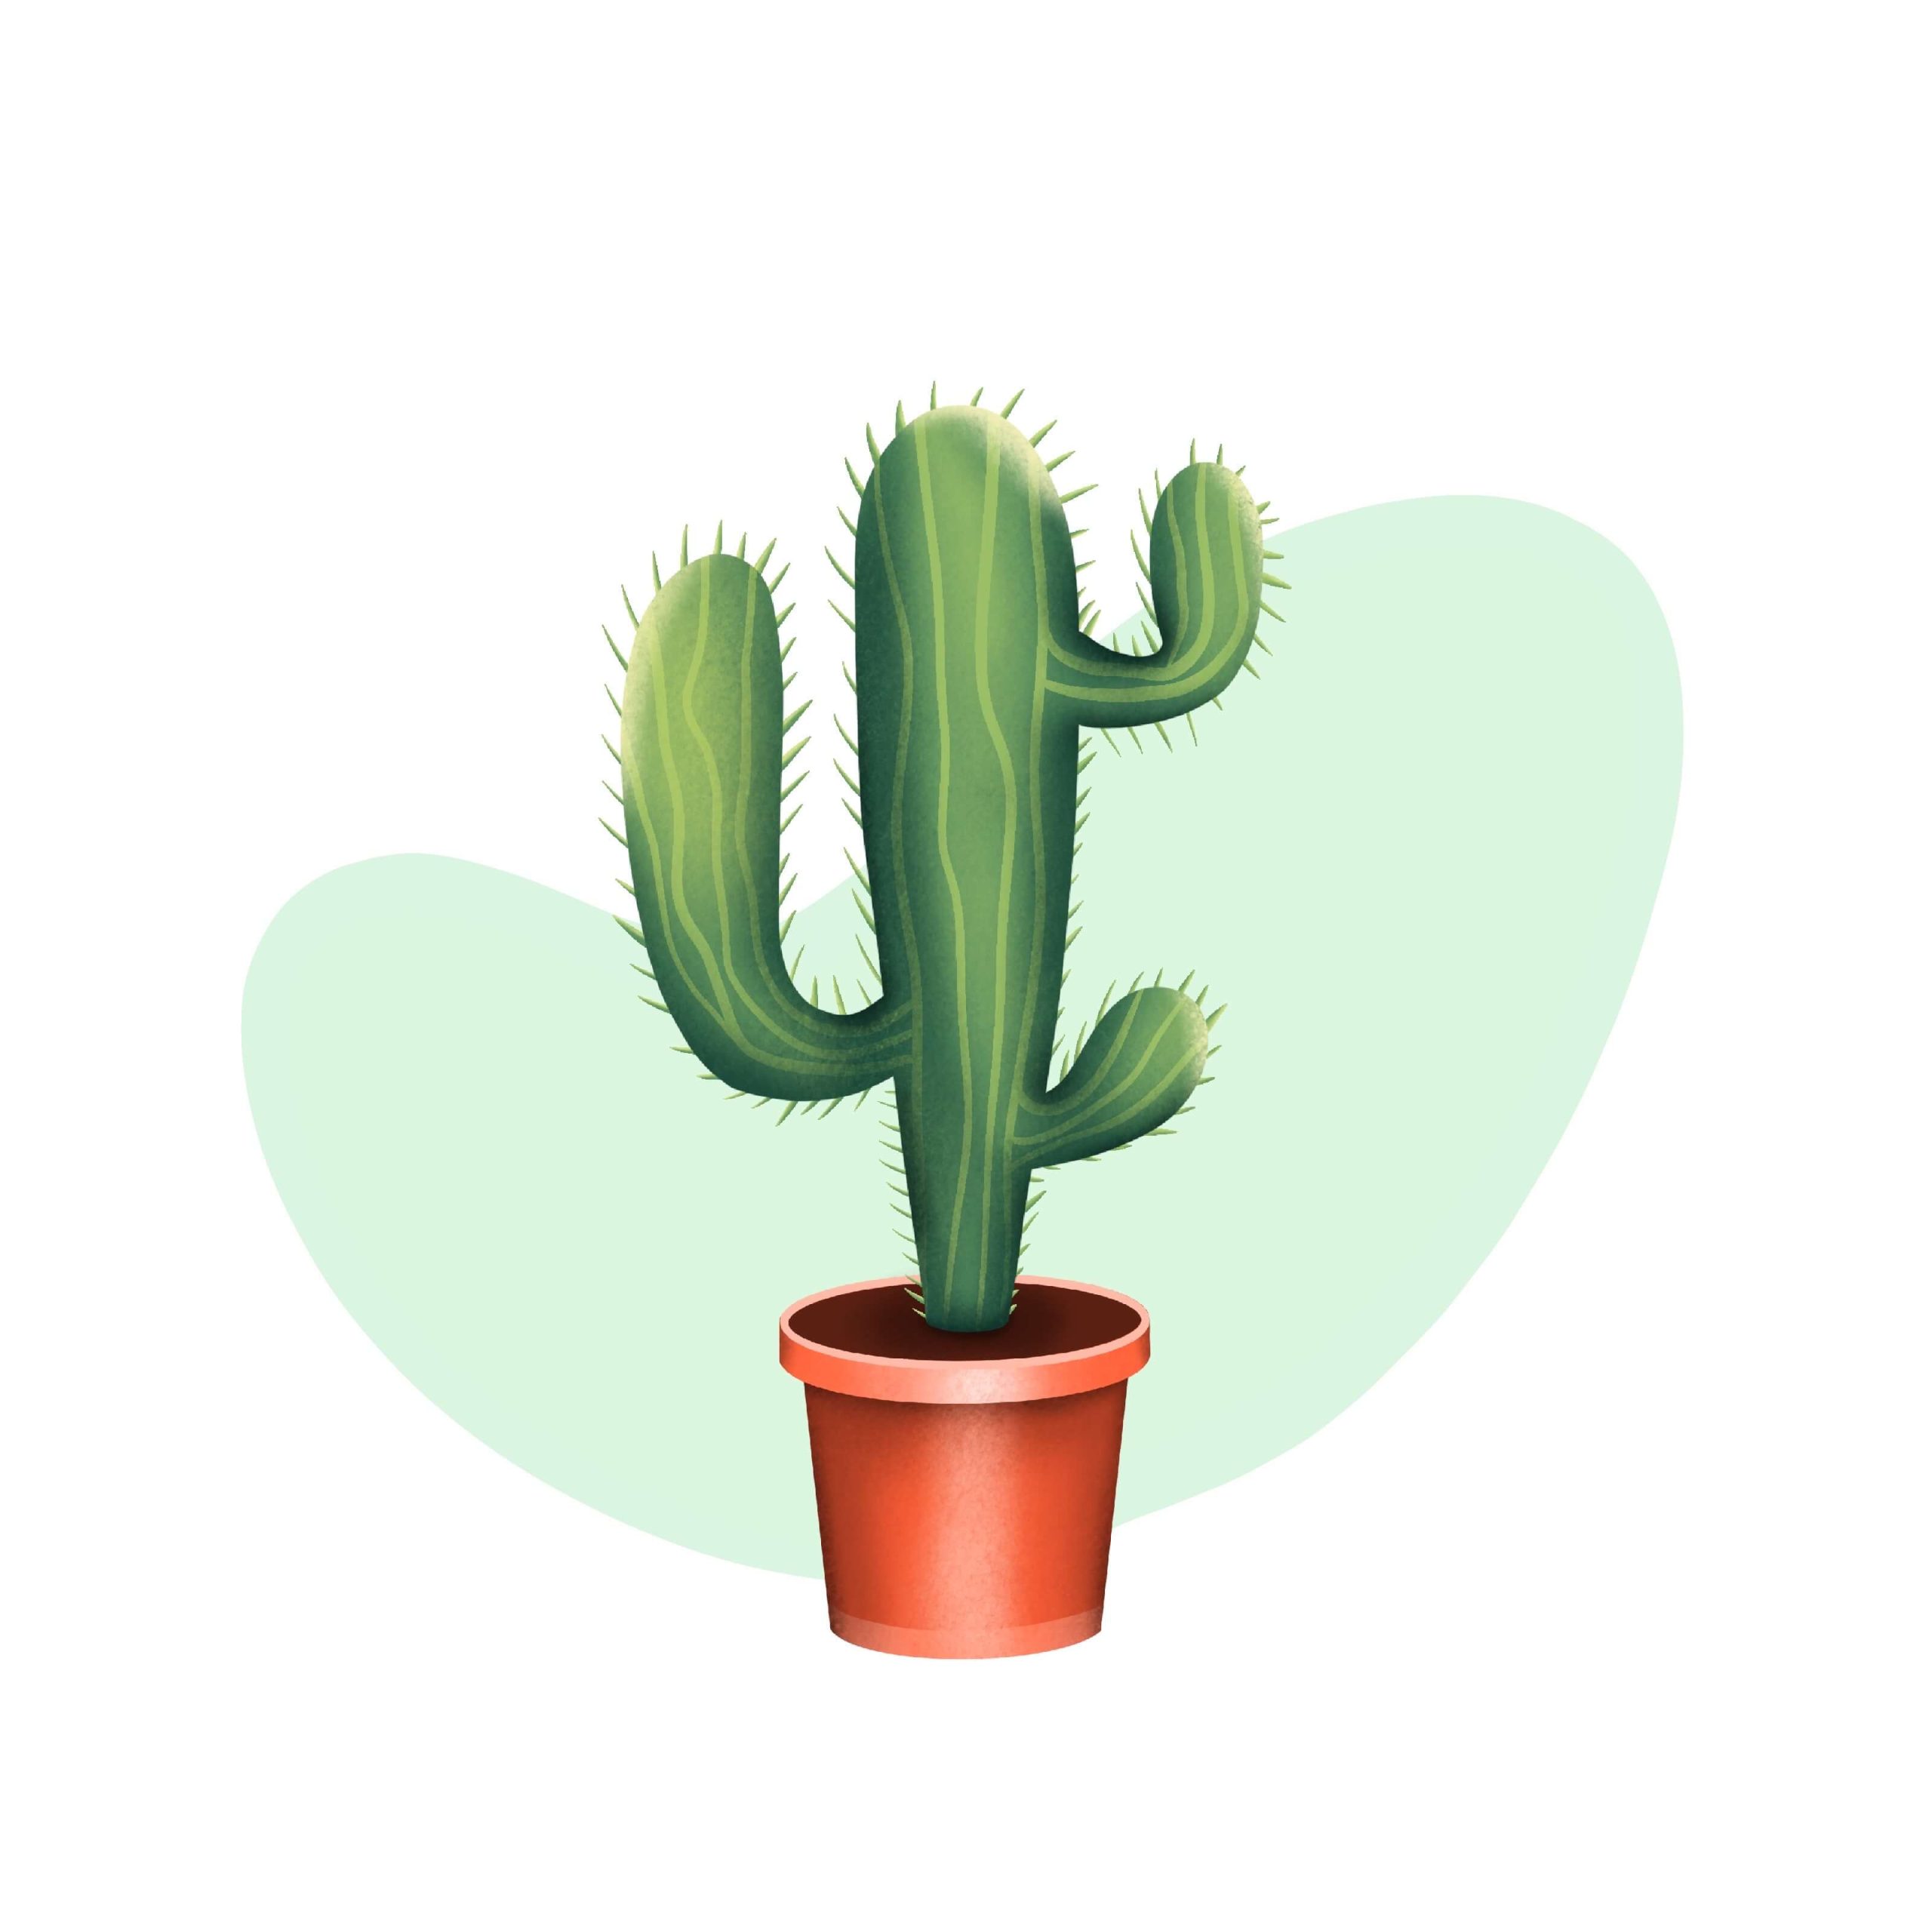 Cactus - Square Illustration